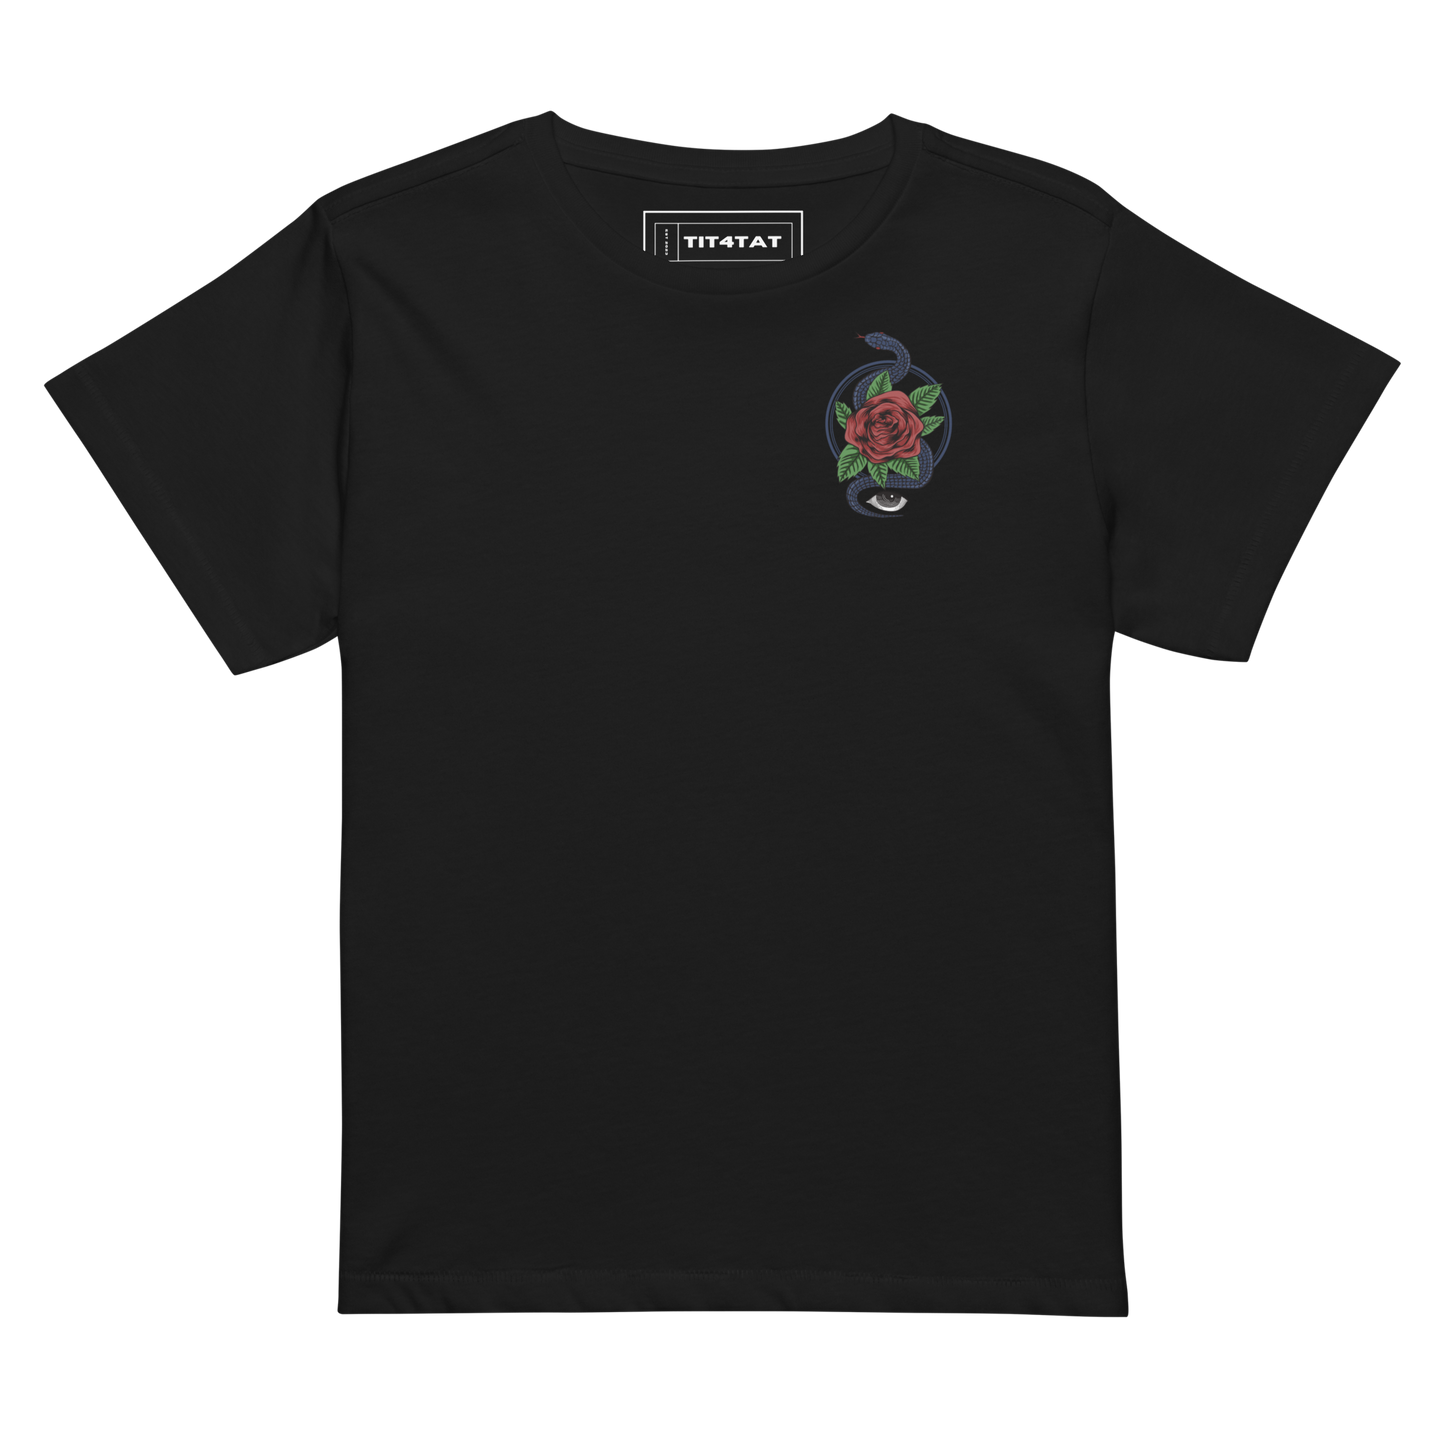 Tit4Tat - "Malevolent Rose" Women’s High-Waisted T-shirt